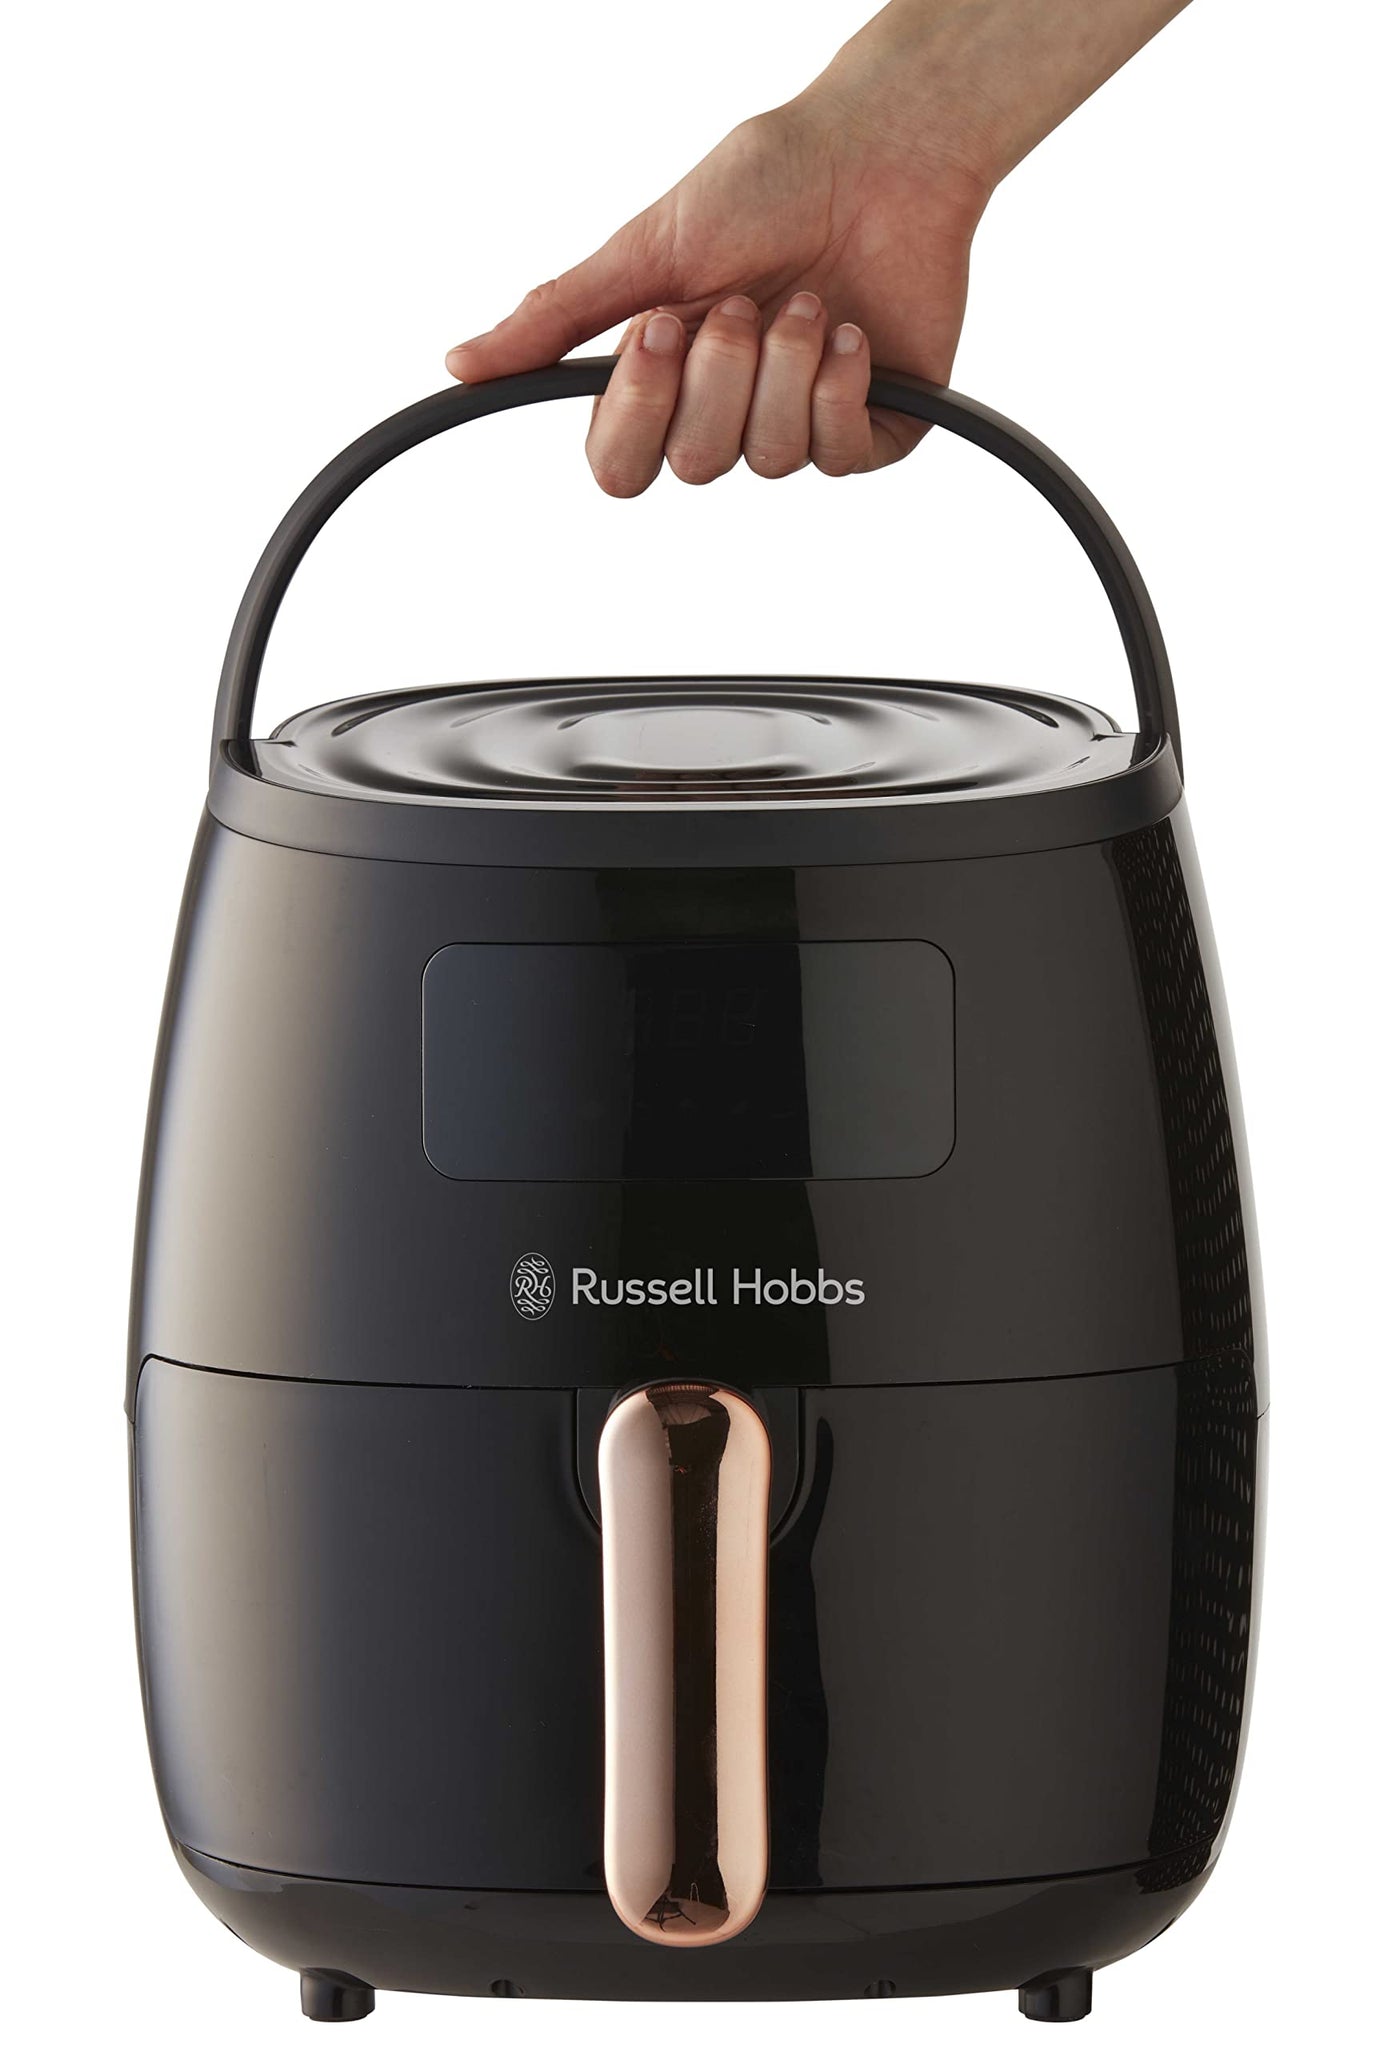 Russell Hobbs Digital Air Fryer Black